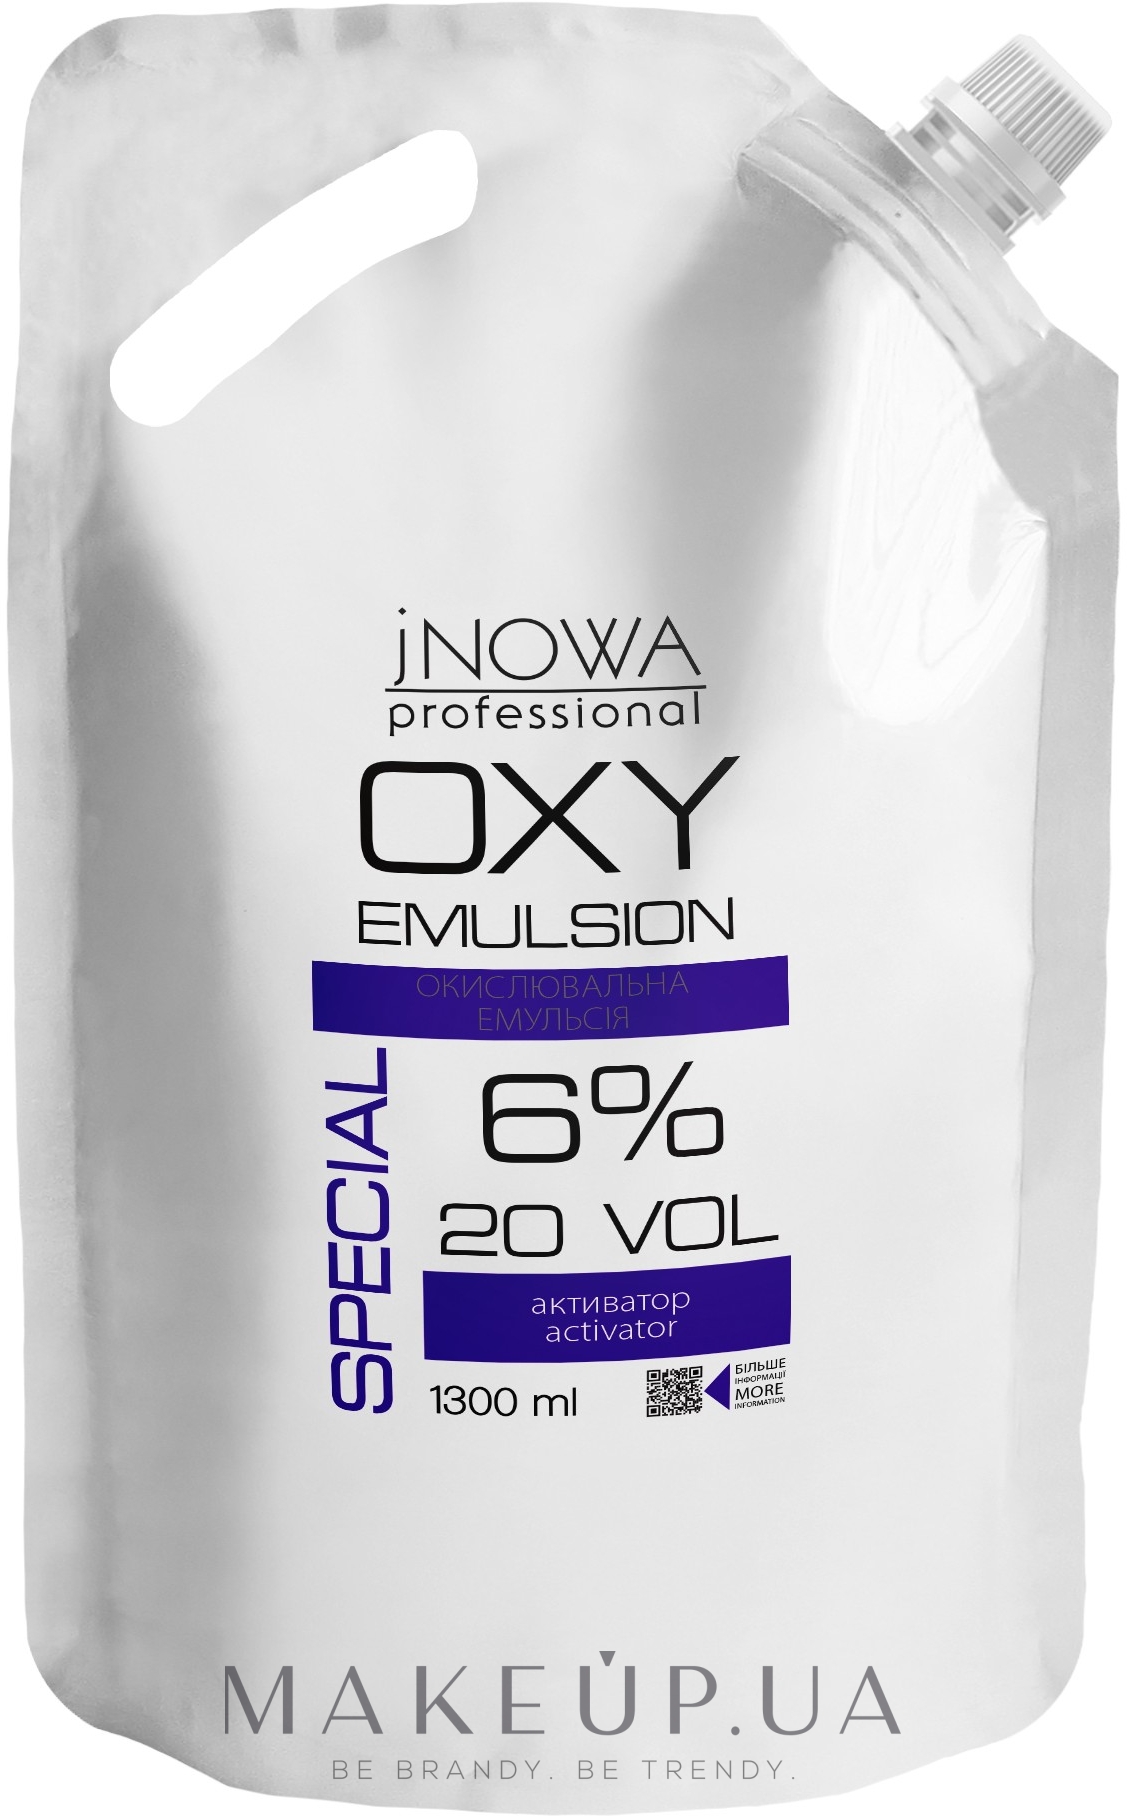 Окислительная эмульсия 6% - jNOWA Professional OXY Emulsion Special 20 vol (дой-пак) — фото 1300ml